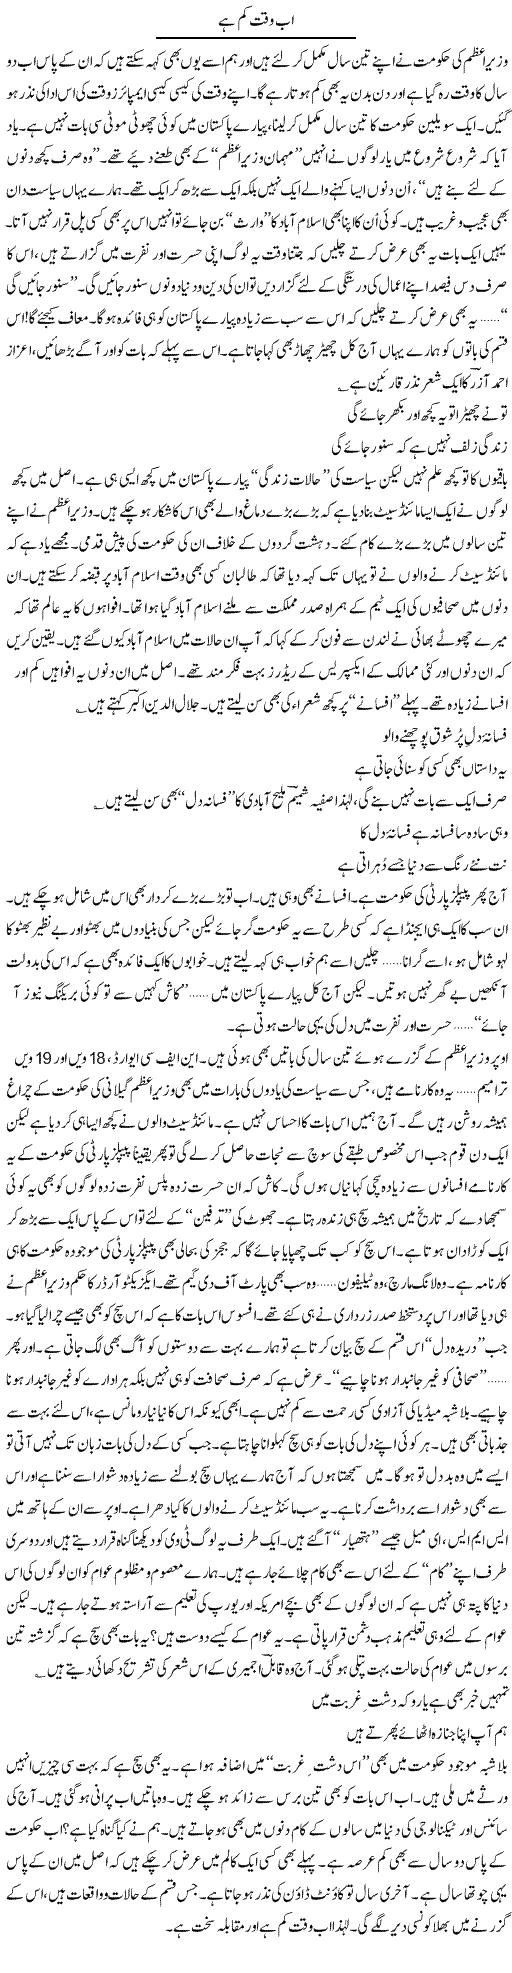 Zardari Government Express Column Ijaz Hafeez 7 April 2011